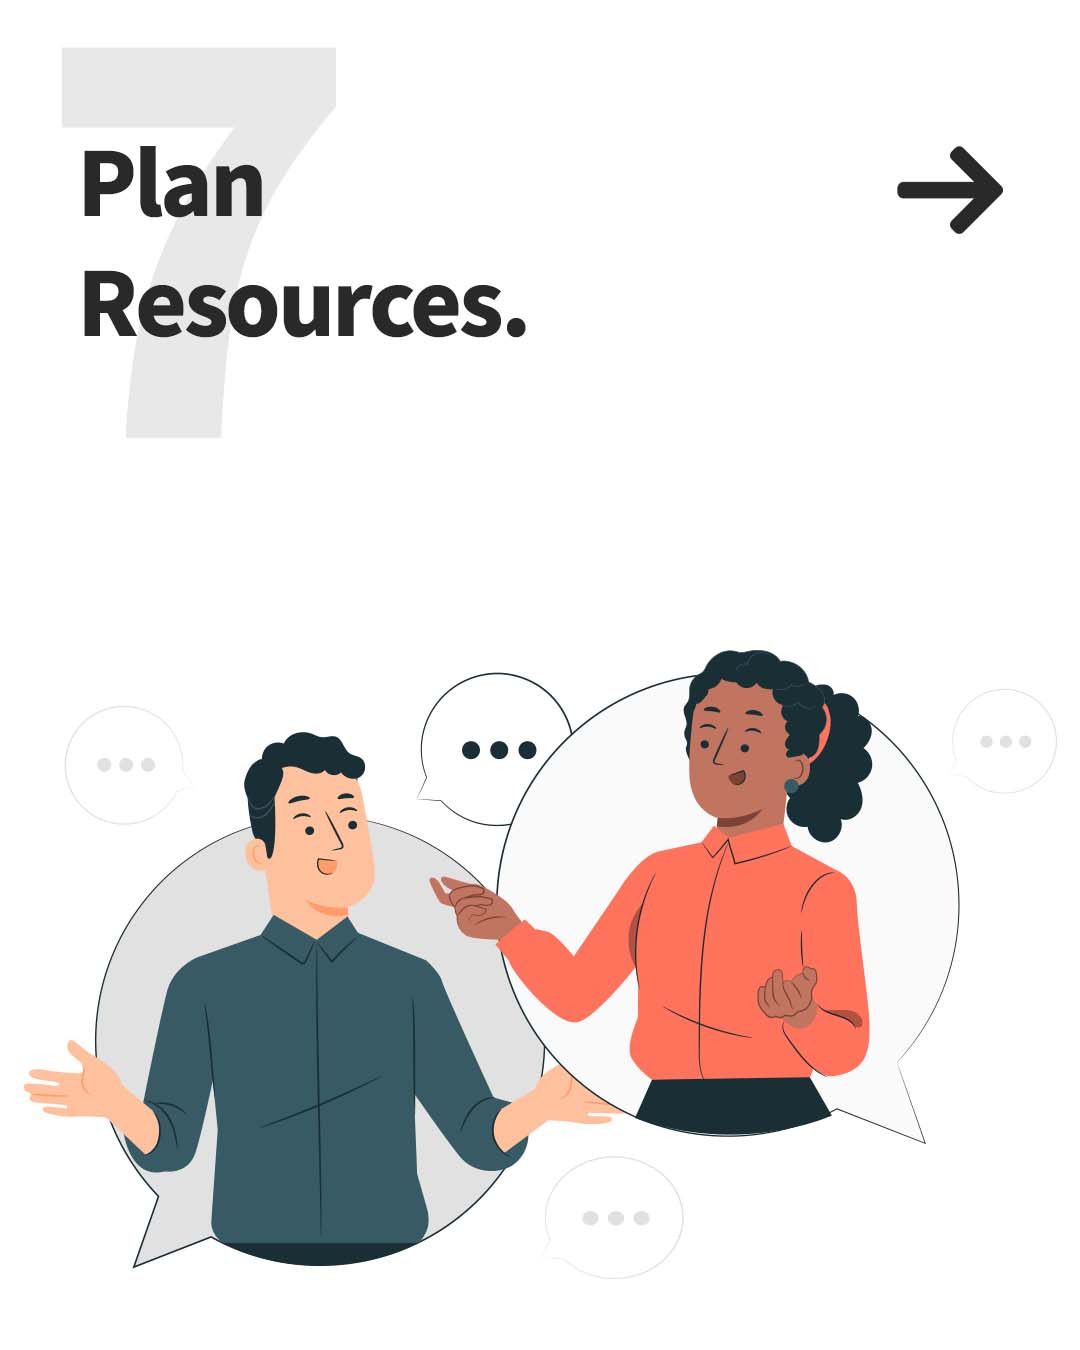 7. Plan Resources.